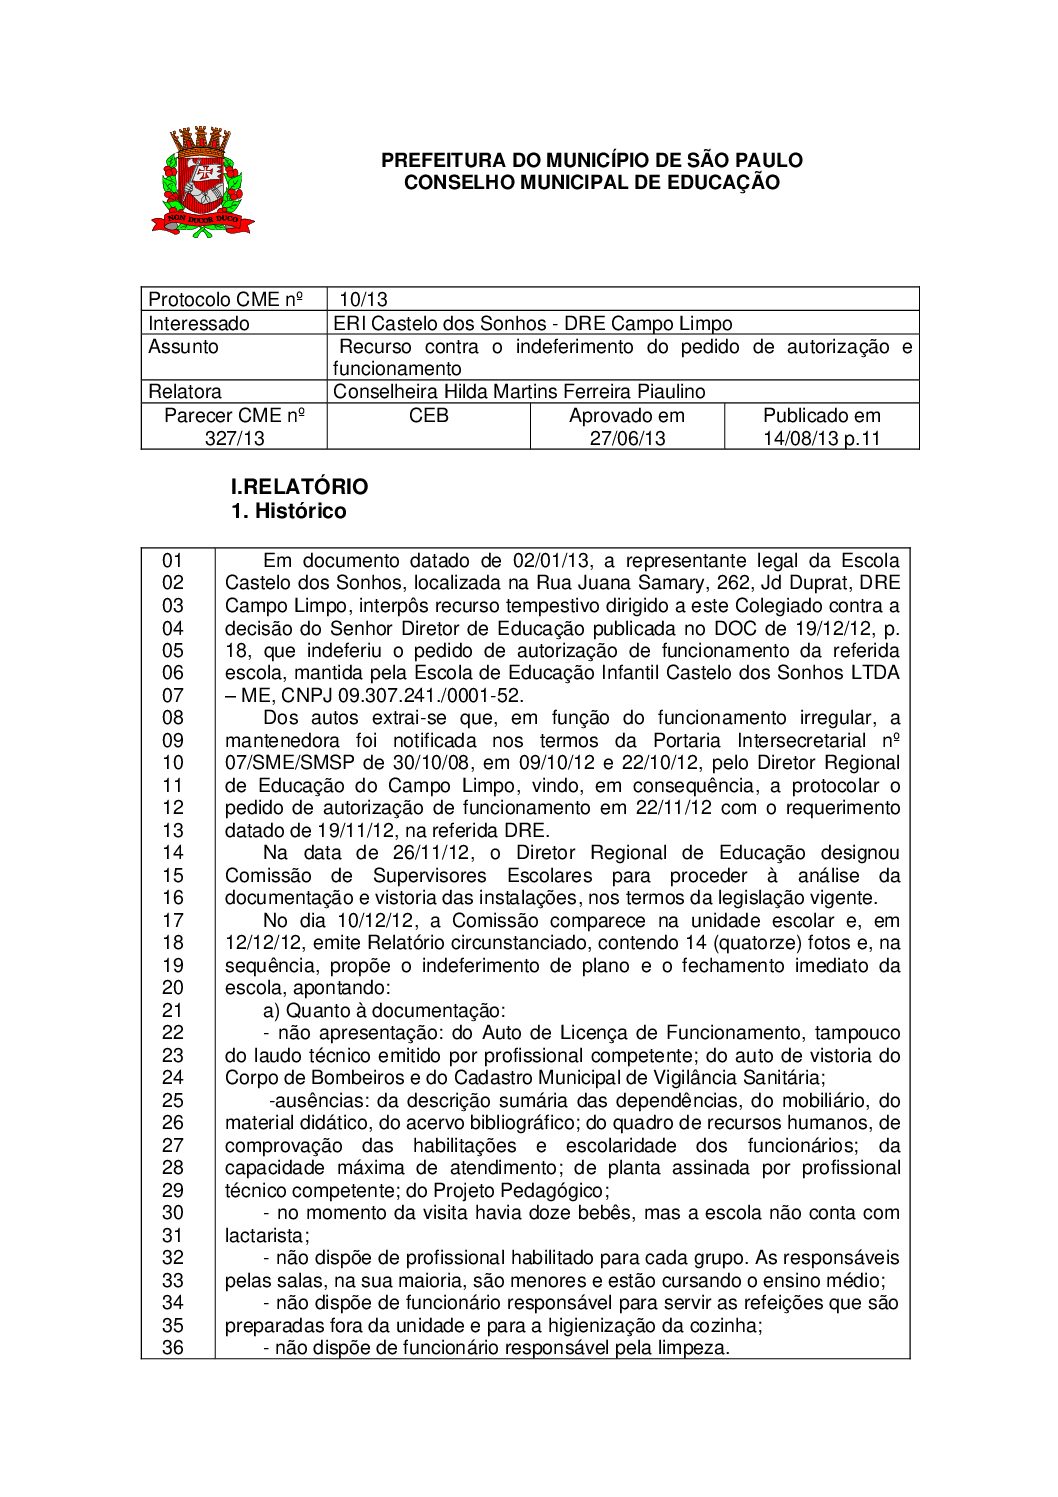 Parecer CME nº 327/2013 -  ERI Castelo dos Sonhos (DRE Campo Limpo) - Recurso contra o indeferimento do pedido de autorização e funcionamento 